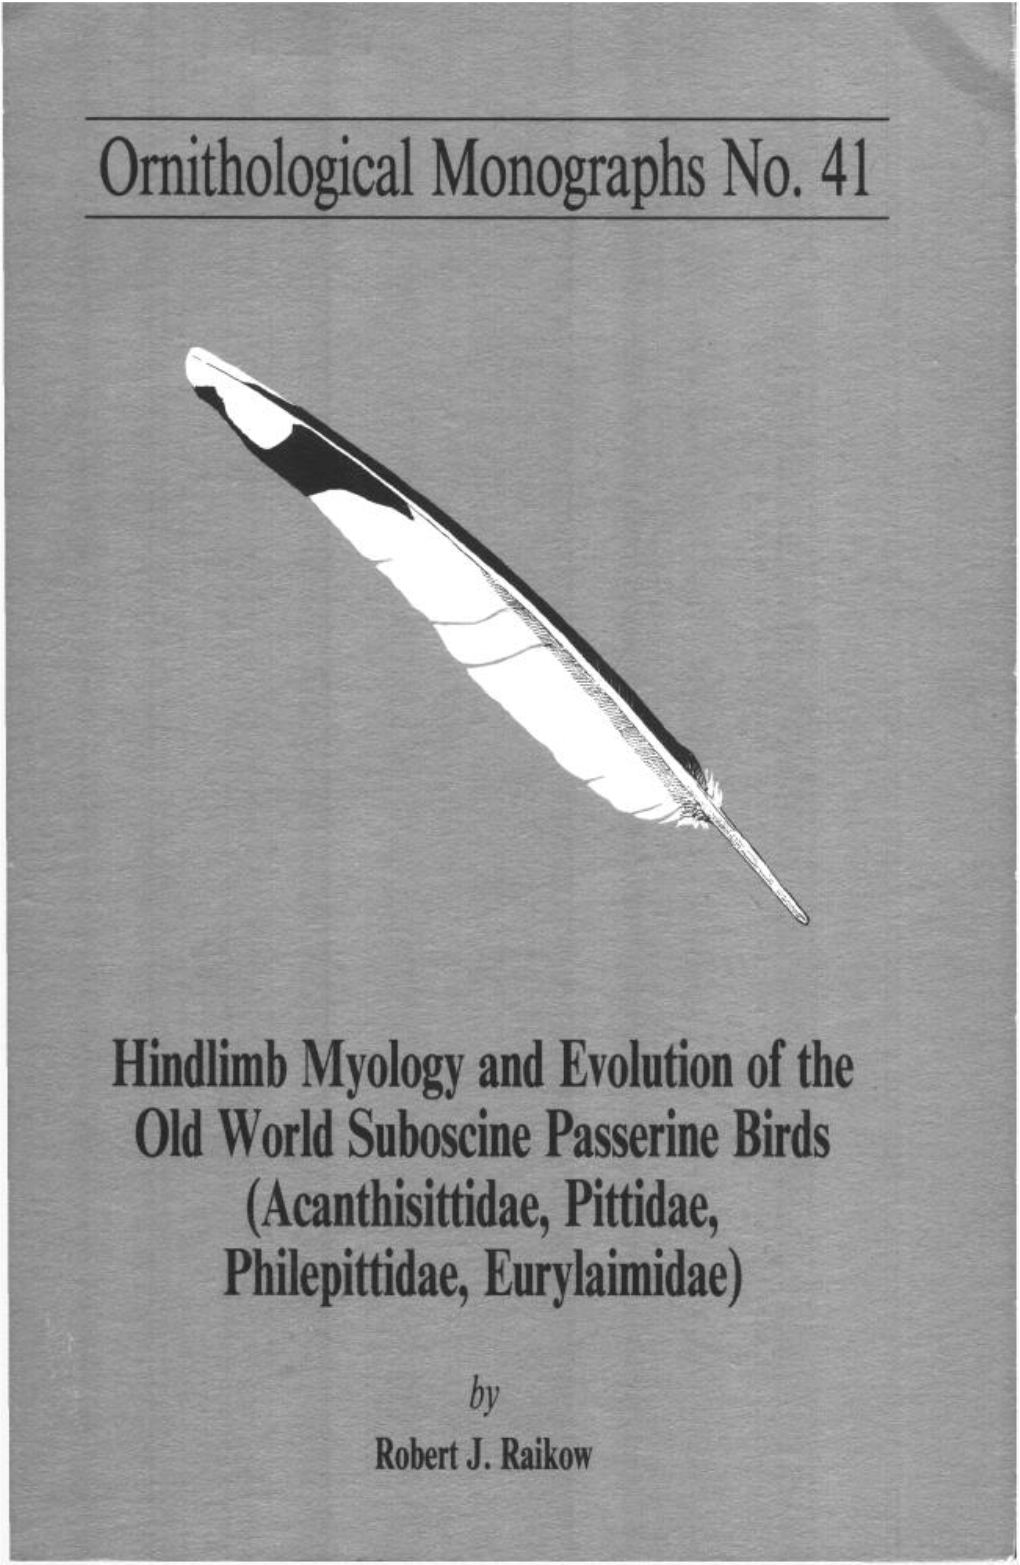 Ornithological Monographs No. 41